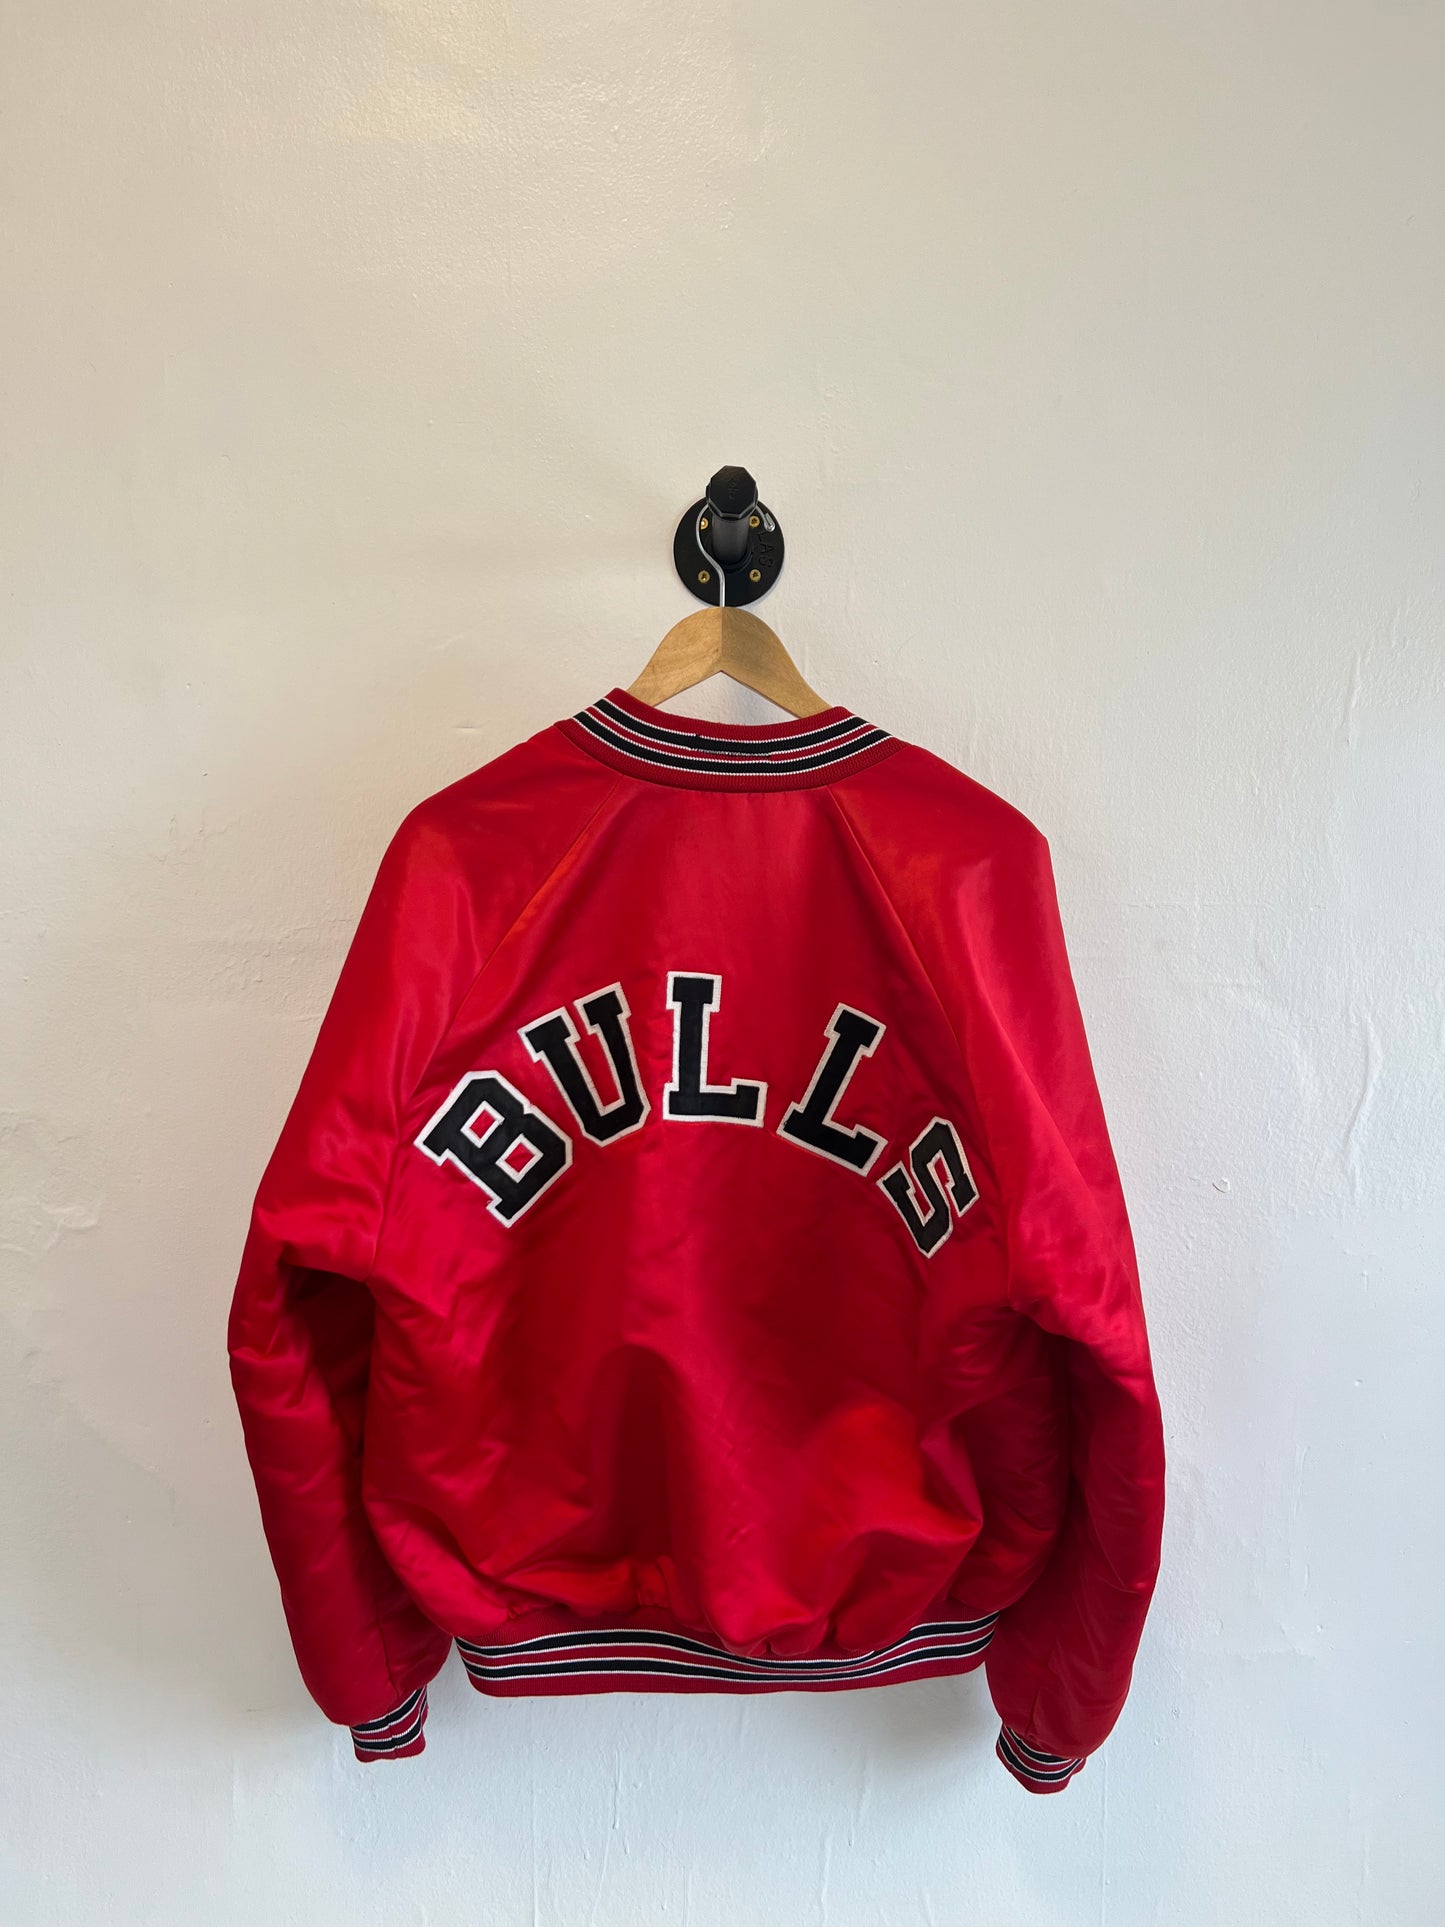 Vintage Bulls Bomber Jacket